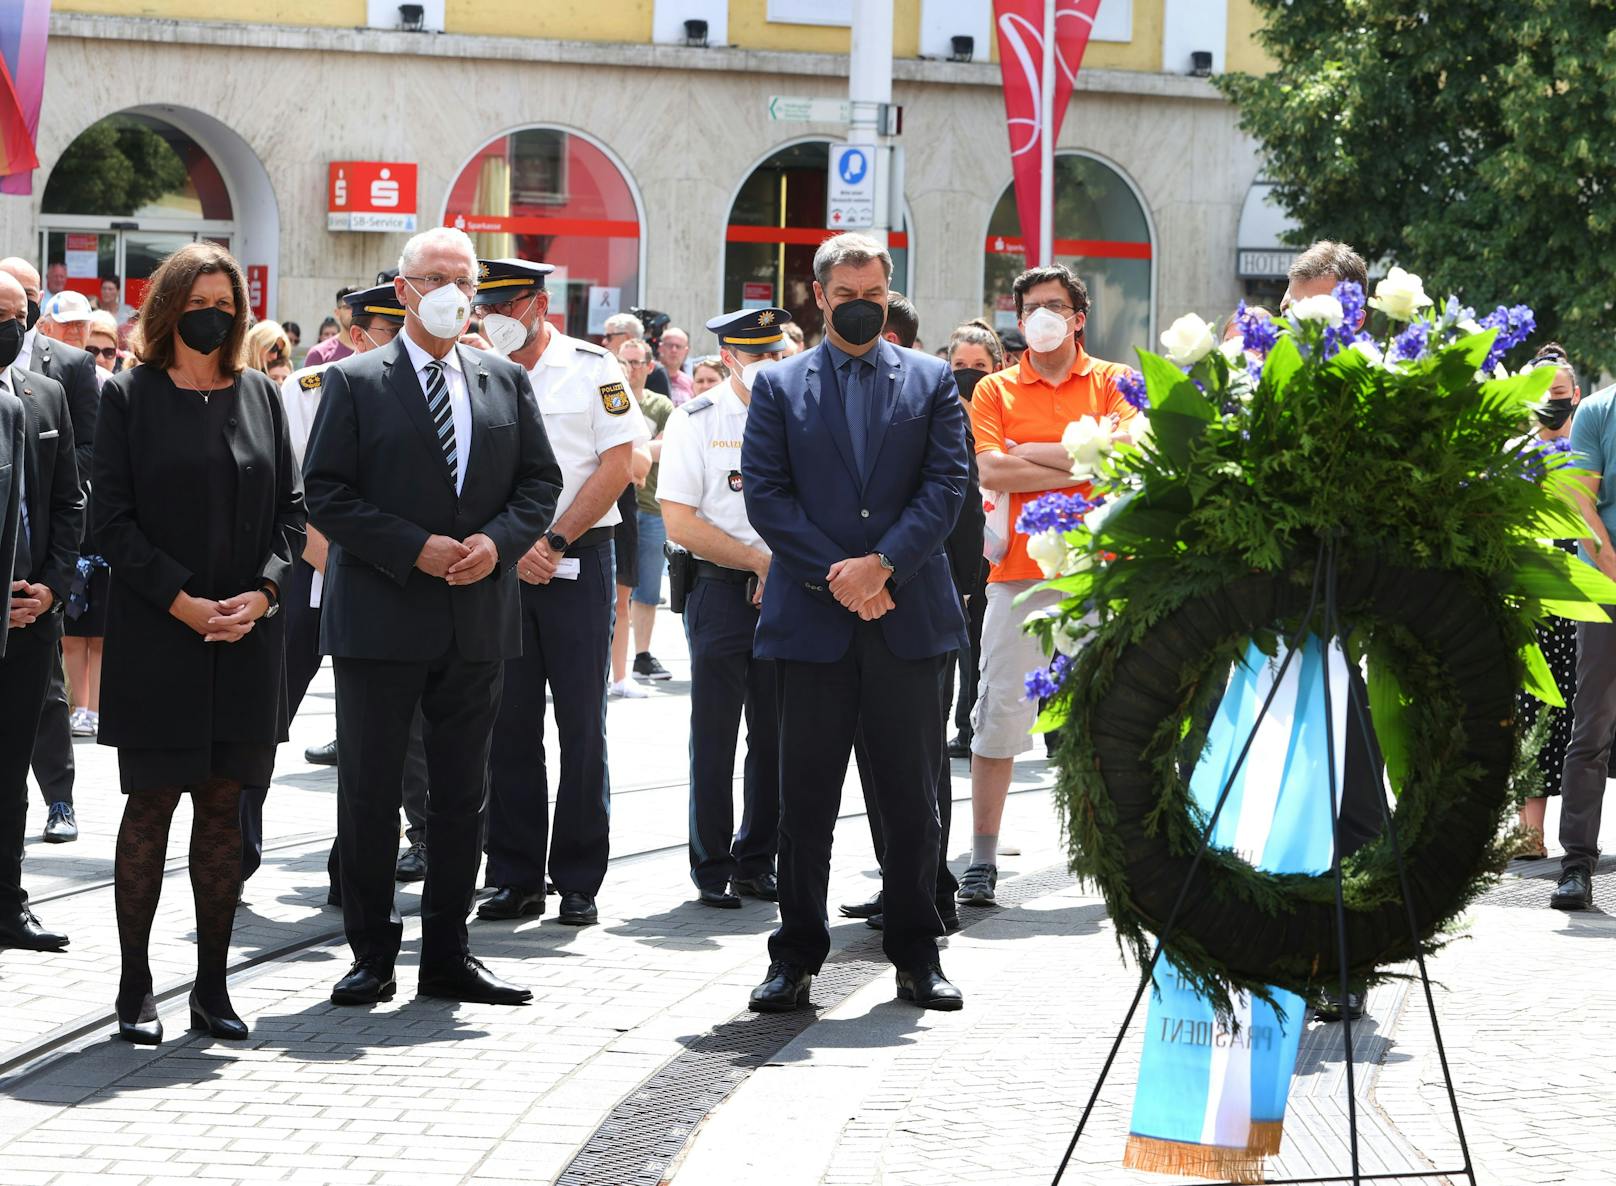 Am Sonntag fand eine Trauerfeier für die Opfer von Würzburg statt. Im Bild. Ilse Aigner (l-r), bayerische Landtagspräsidentin, Joachim Herrmann, bayerischer Innenminister und Markus Söder, bayerischer Ministerpräsident (alle CSU).